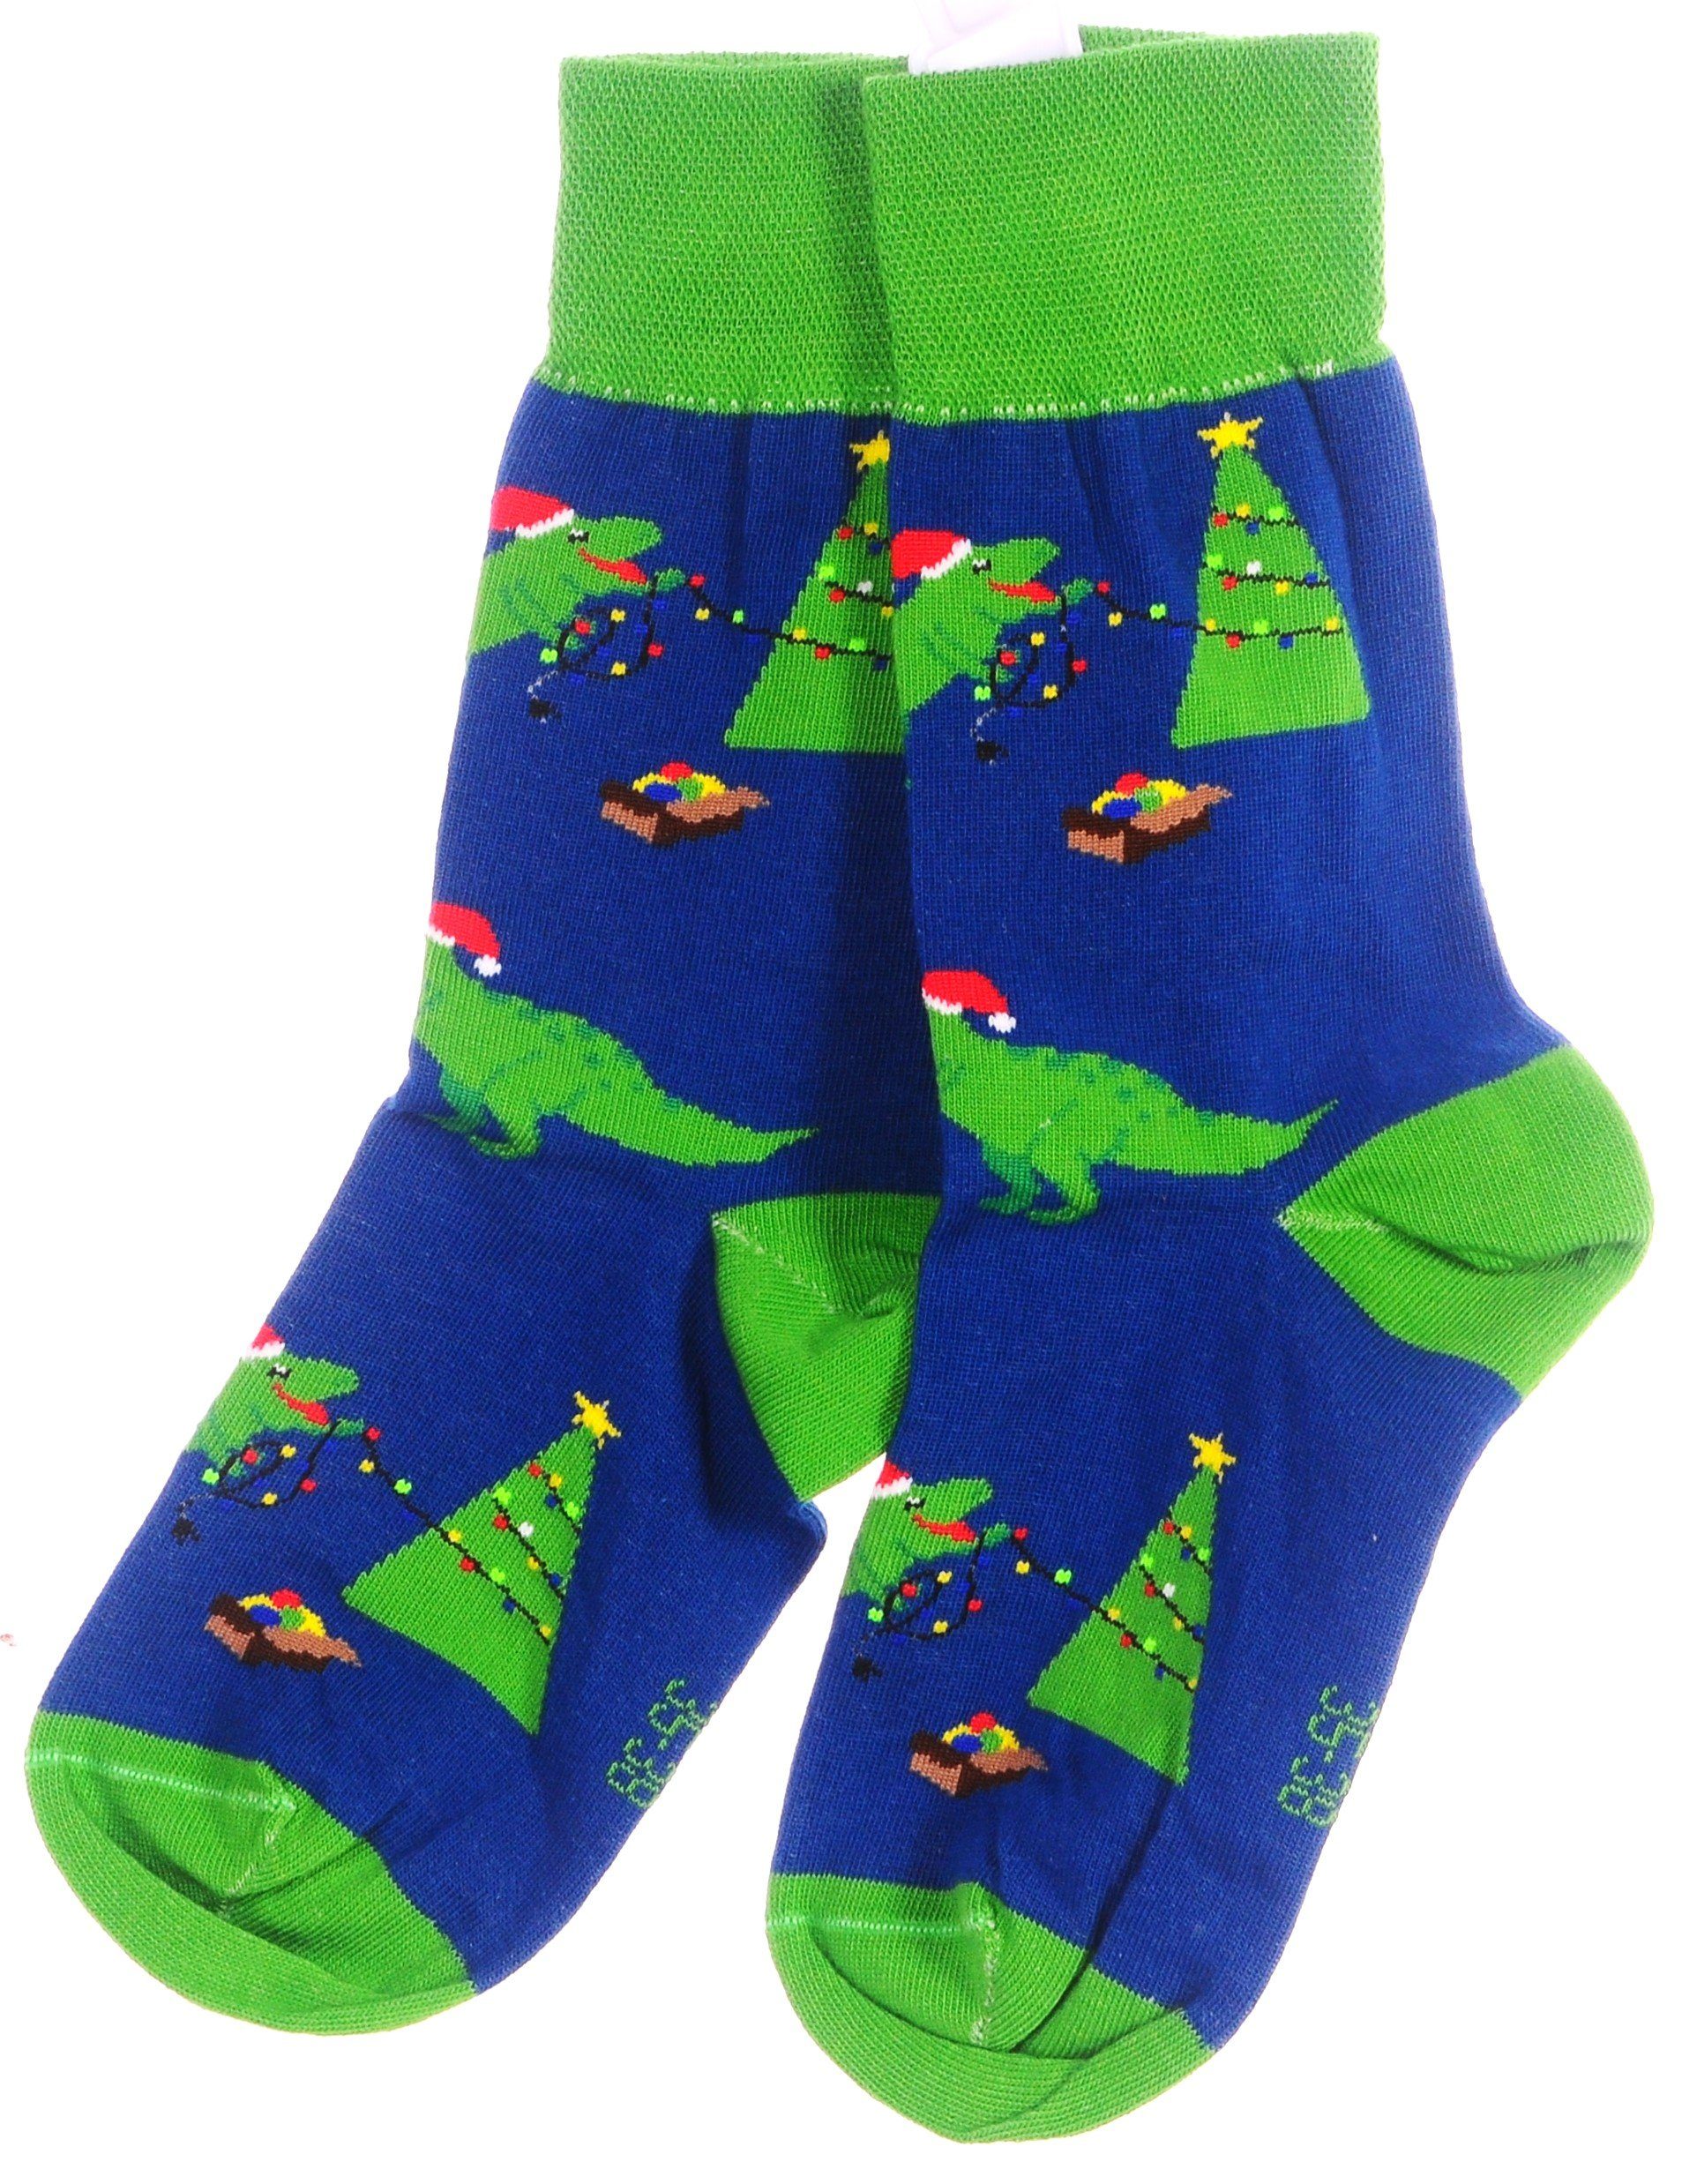 Martinex Socken 1 Paar Socken Strümpfe 27 31 35 38 39 42 43 46 Weihnachtssocken mit Drachen Muster und Tannenbaum